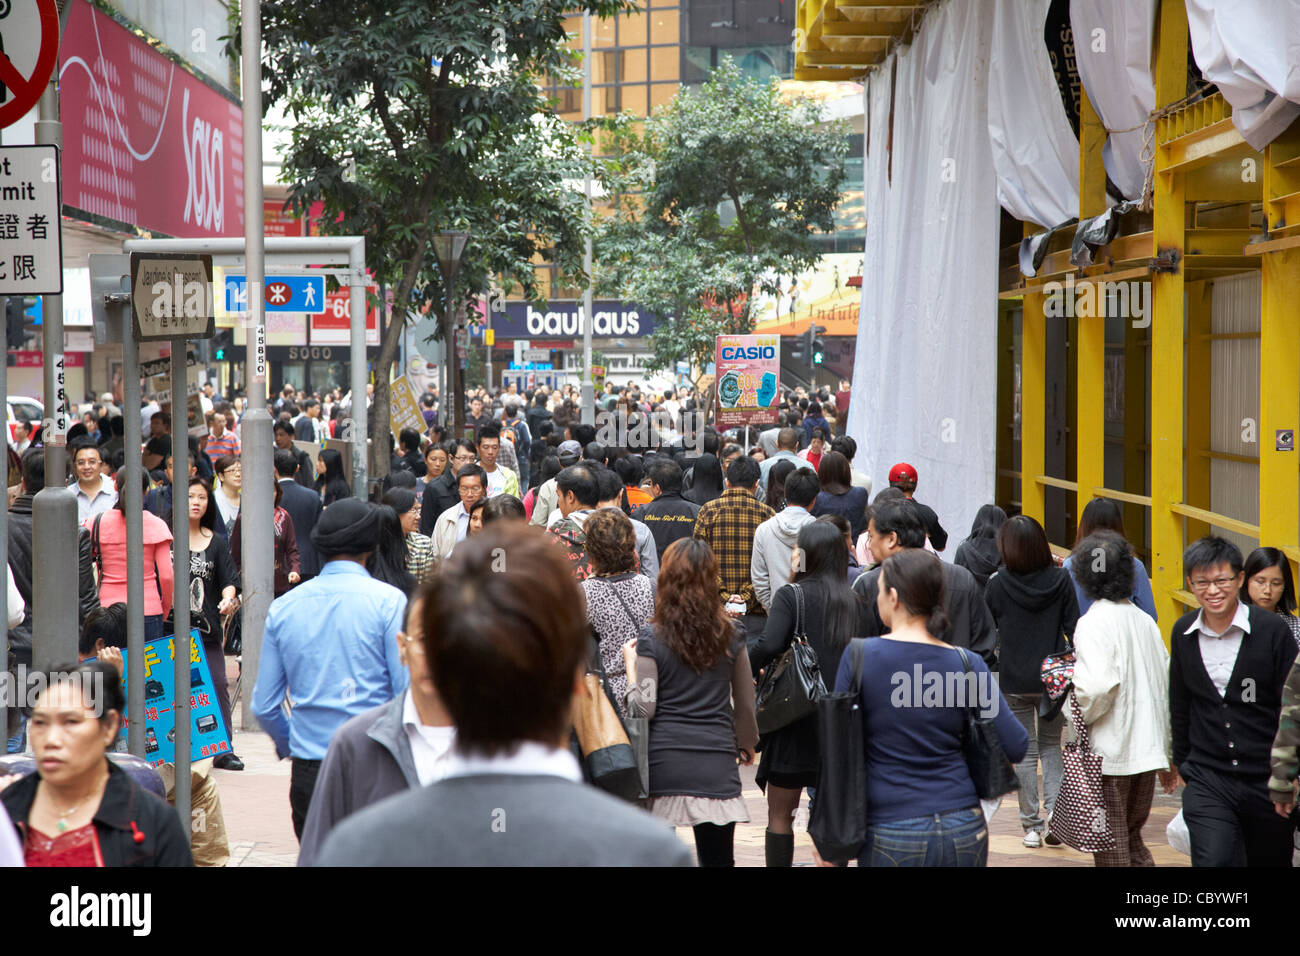 Foule d'acheteurs chinois marchant le long de la rue Crescent Hotel Causeway Bay Hong Kong Hong Kong Chine Asie Banque D'Images